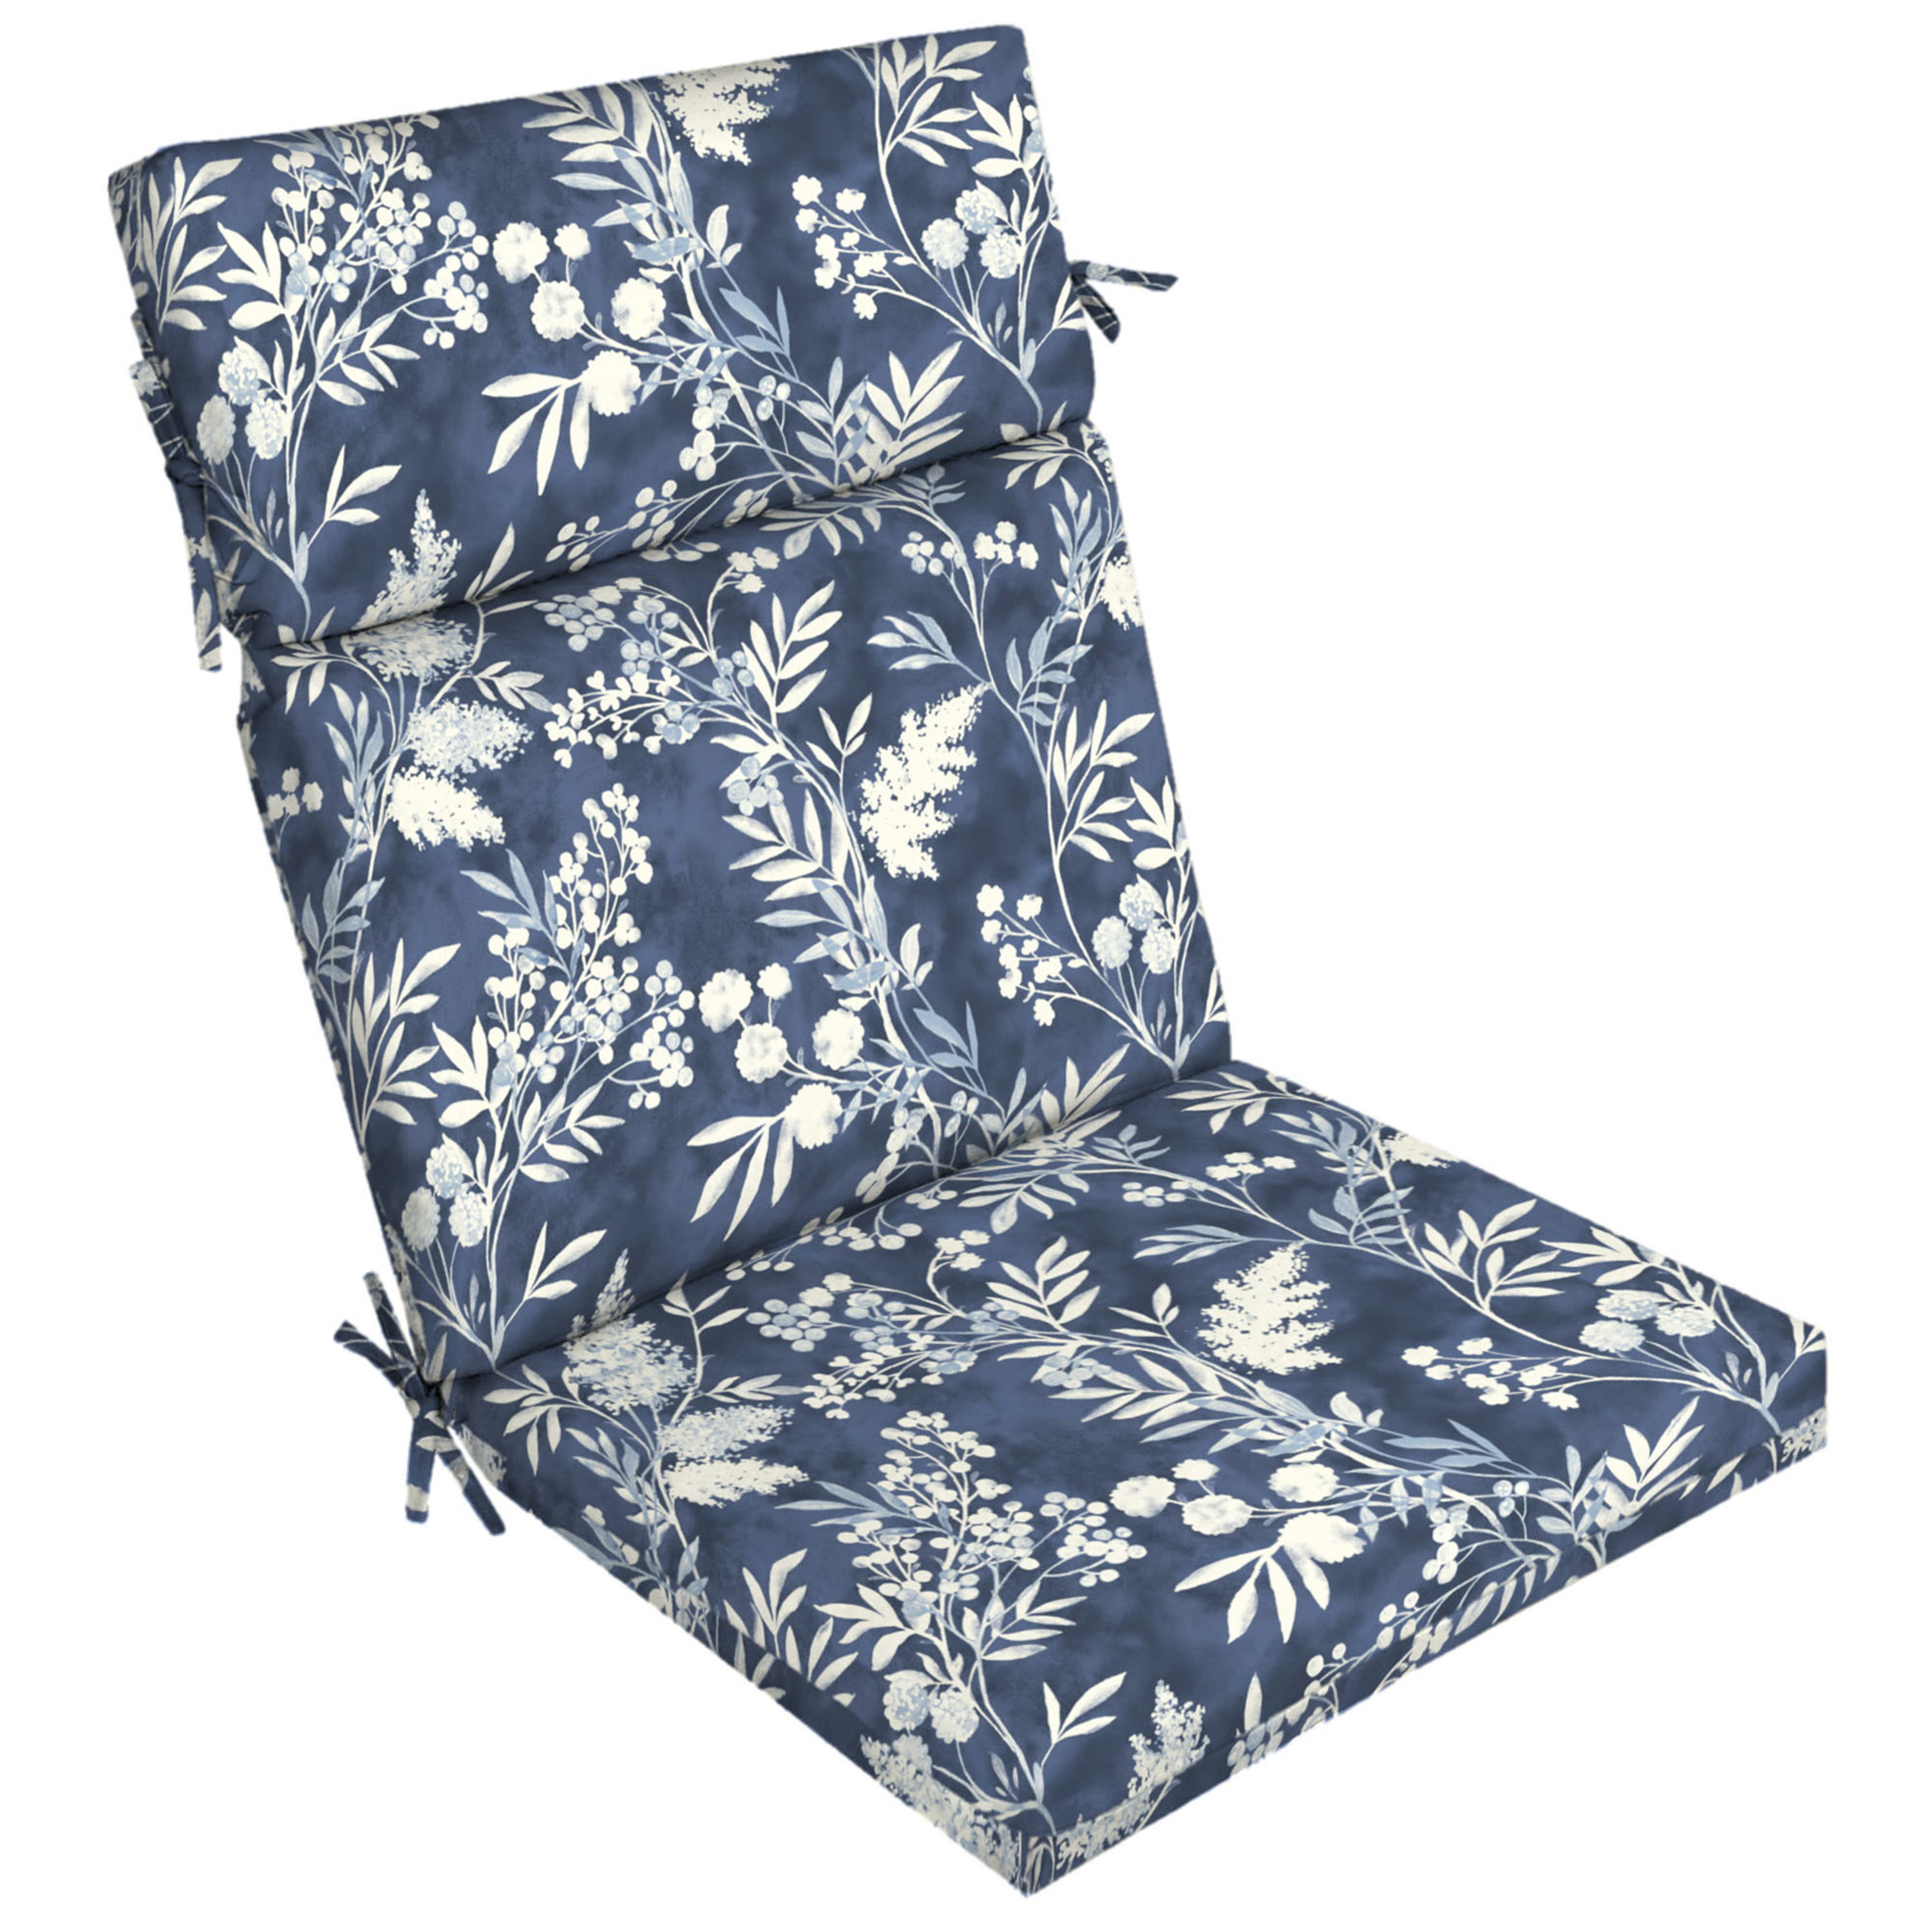 Mainstays 43 x 20 Blue Sand Dollar outdoor patio cushion for $8 - Clark  Deals